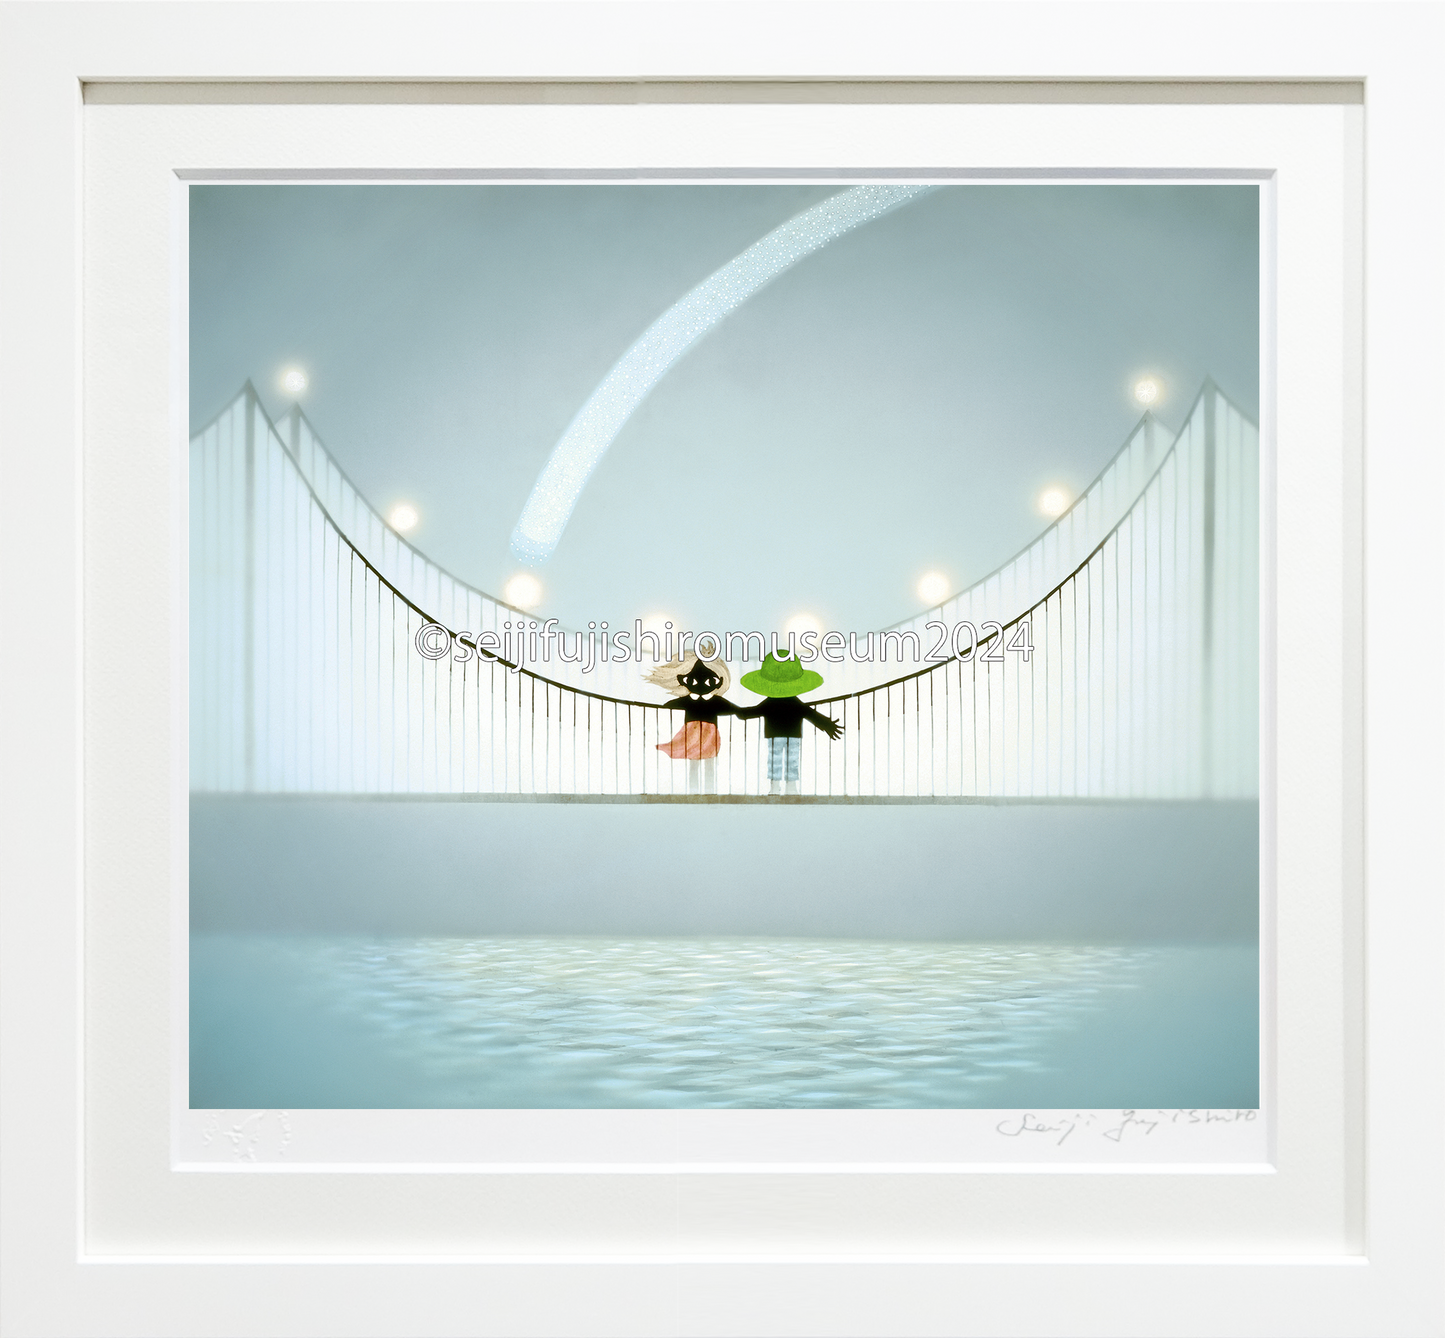 「つり橋はぼくのハープ」FSM-211, 212ジクレー版画